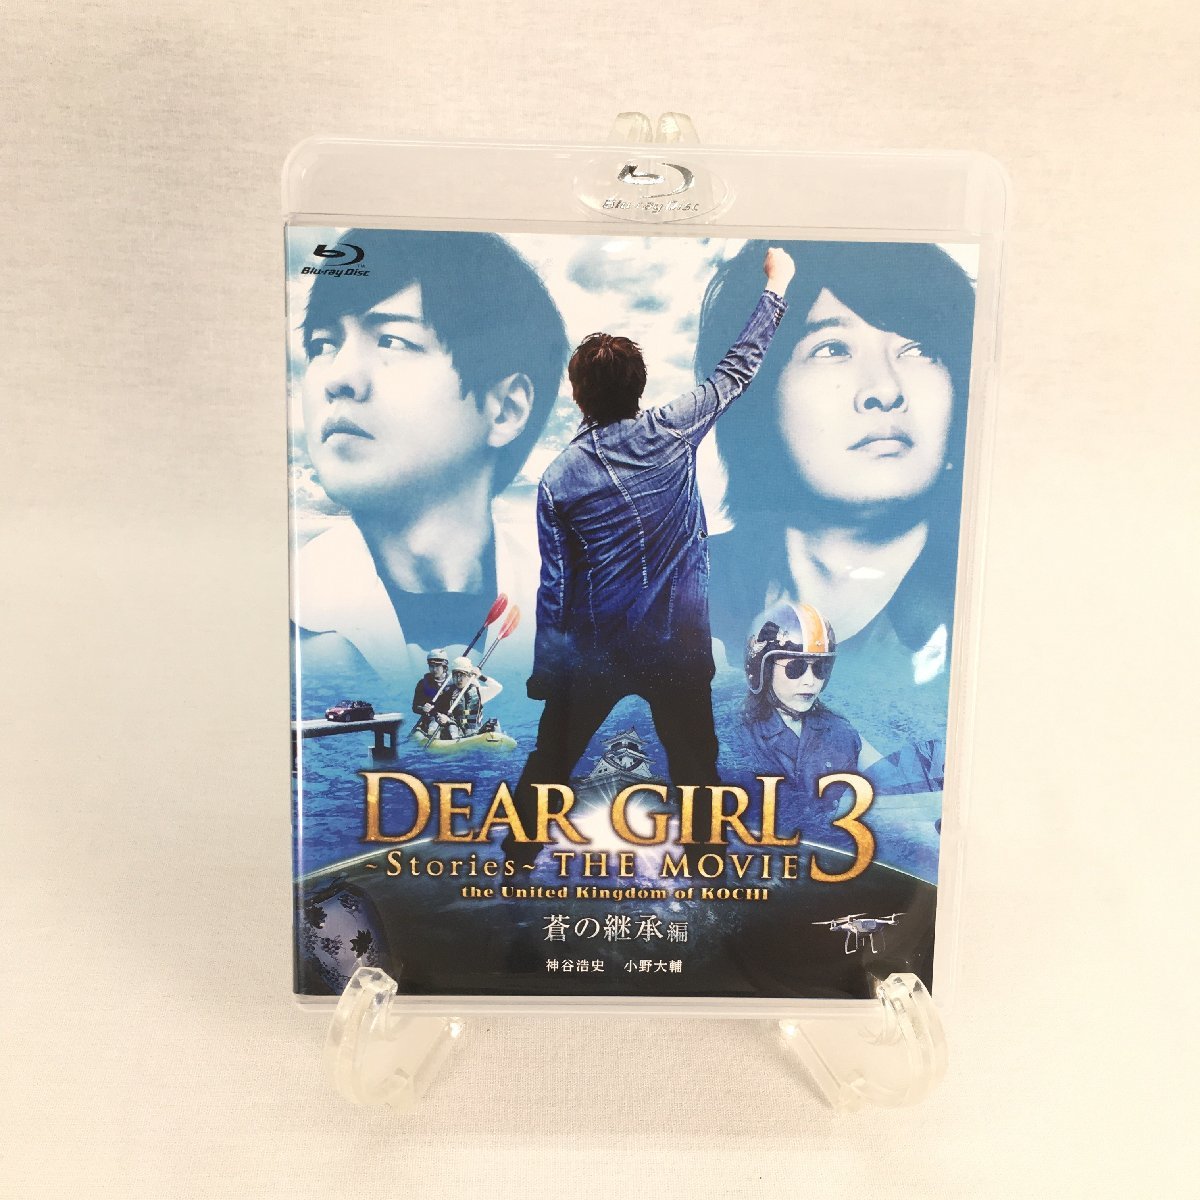 〇現状品〇Dear Girl~Stories~ THE MOVIE3 the United Kingdom of KOCHI 蒼の継承編 Blu-ray Disc_画像1